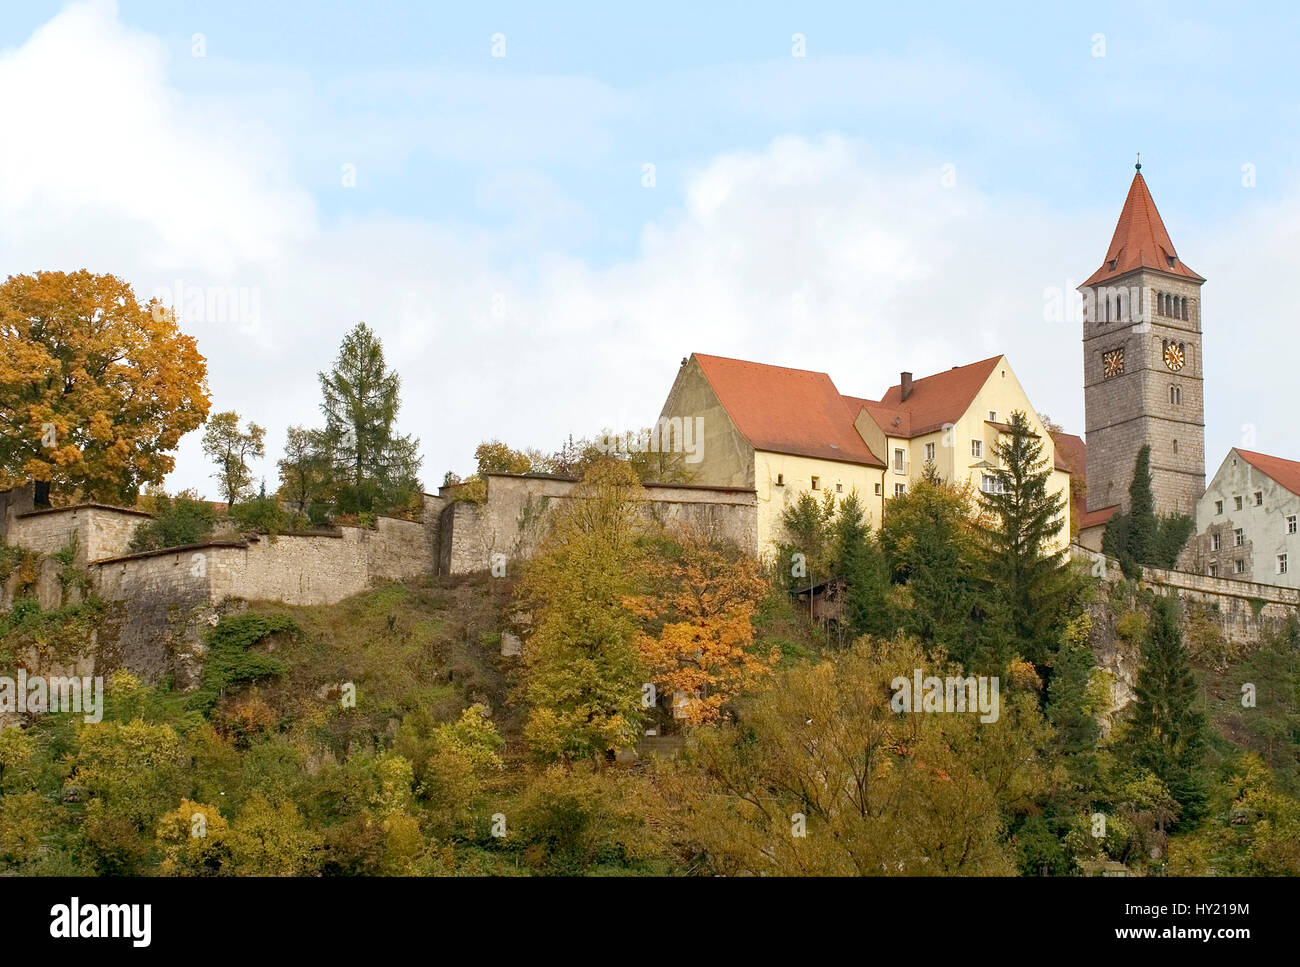 Image du château monastère à Kastl dans le Land allemand de Bavière. Blick auf das dans Klosterschloss Kastl Bayern, Deutschland. Banque D'Images